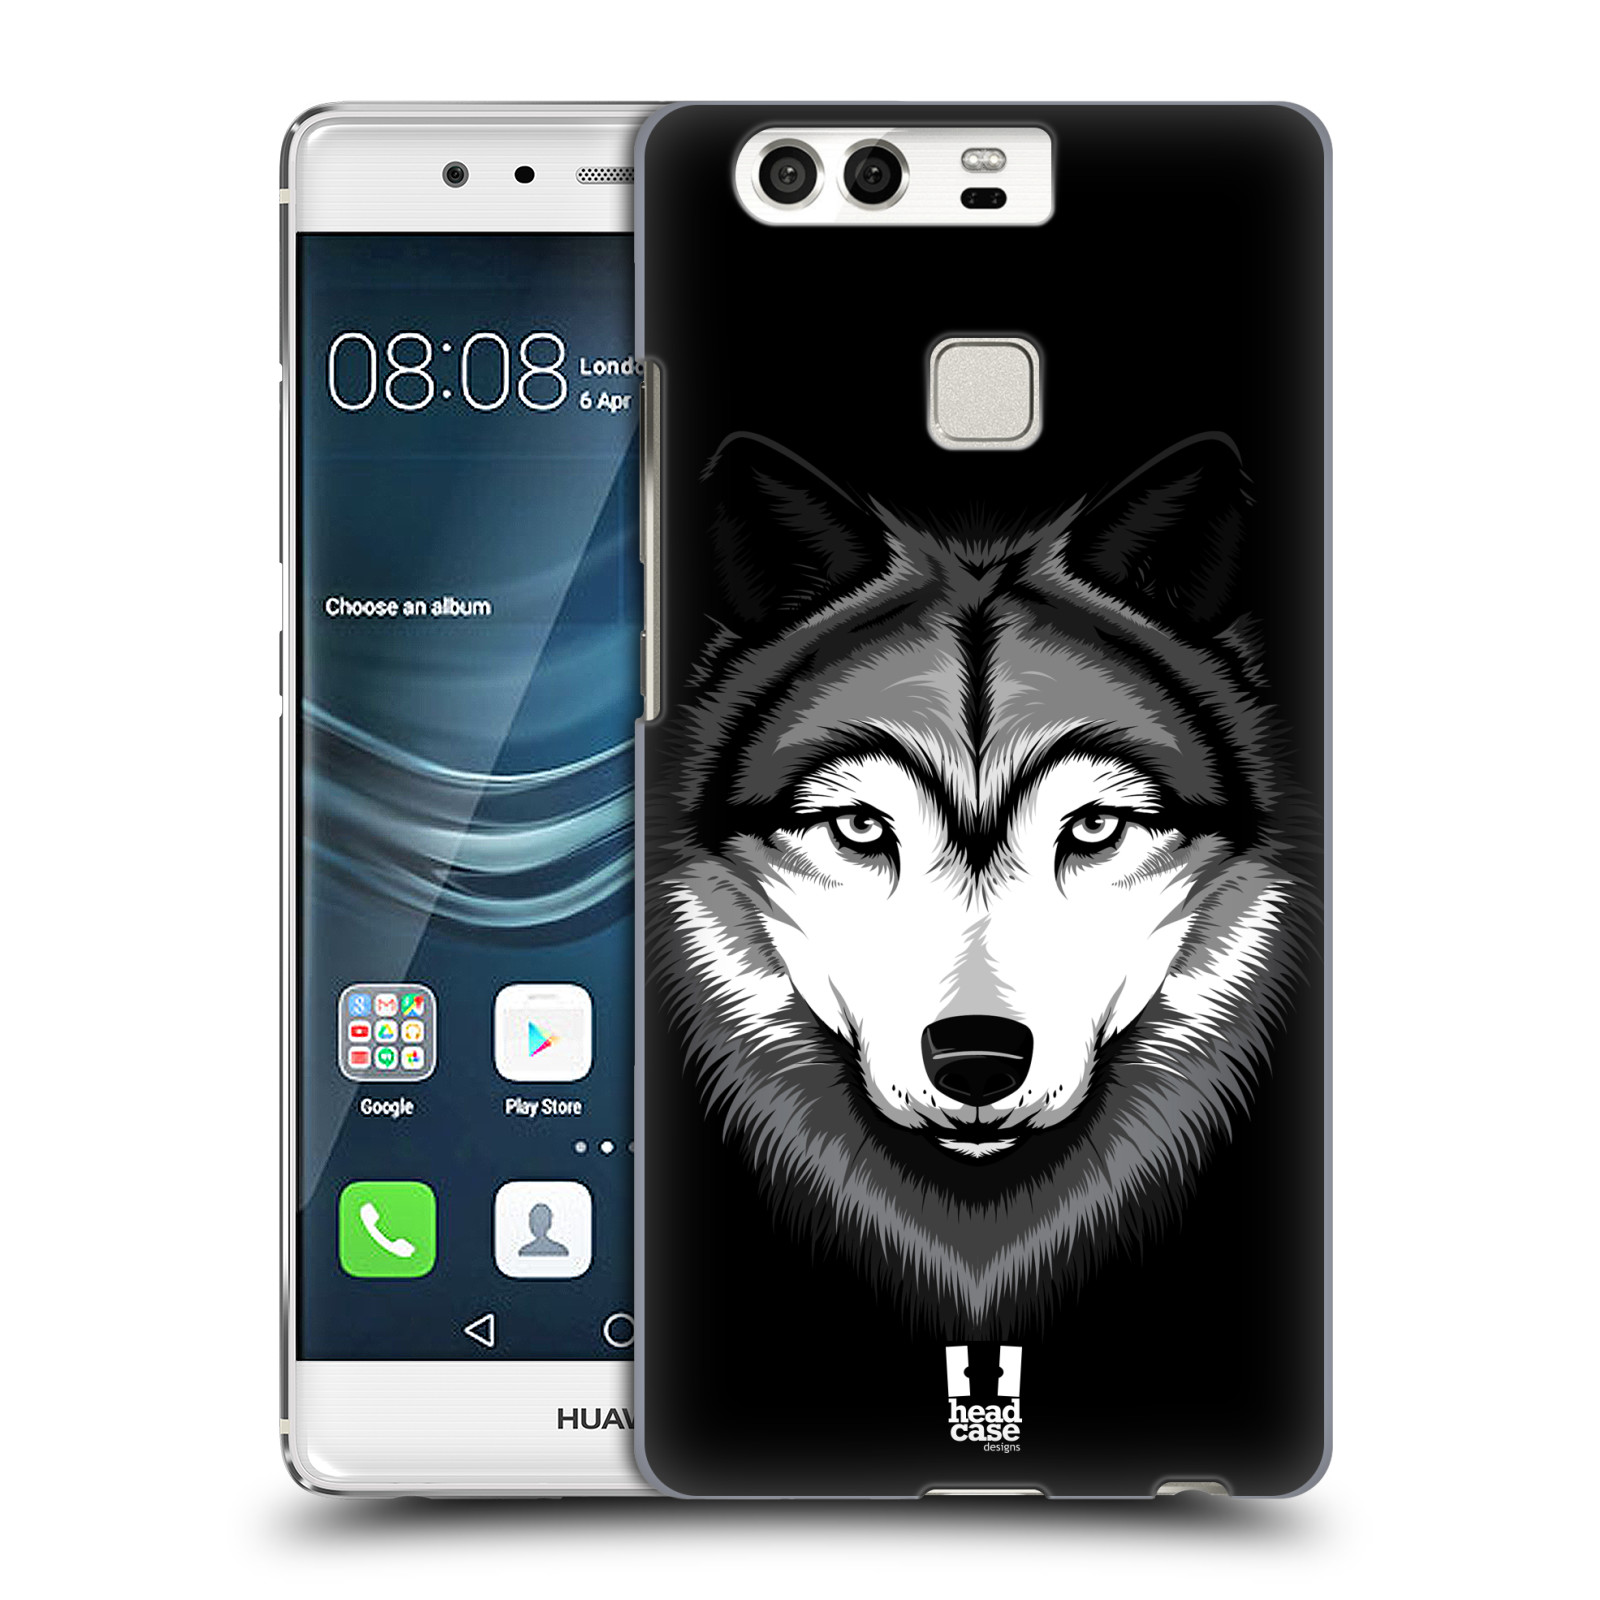 HEAD CASE plastový obal na mobil Huawei P9 / P9 DUAL SIM vzor Zvíře kreslená tvář 2 vlk